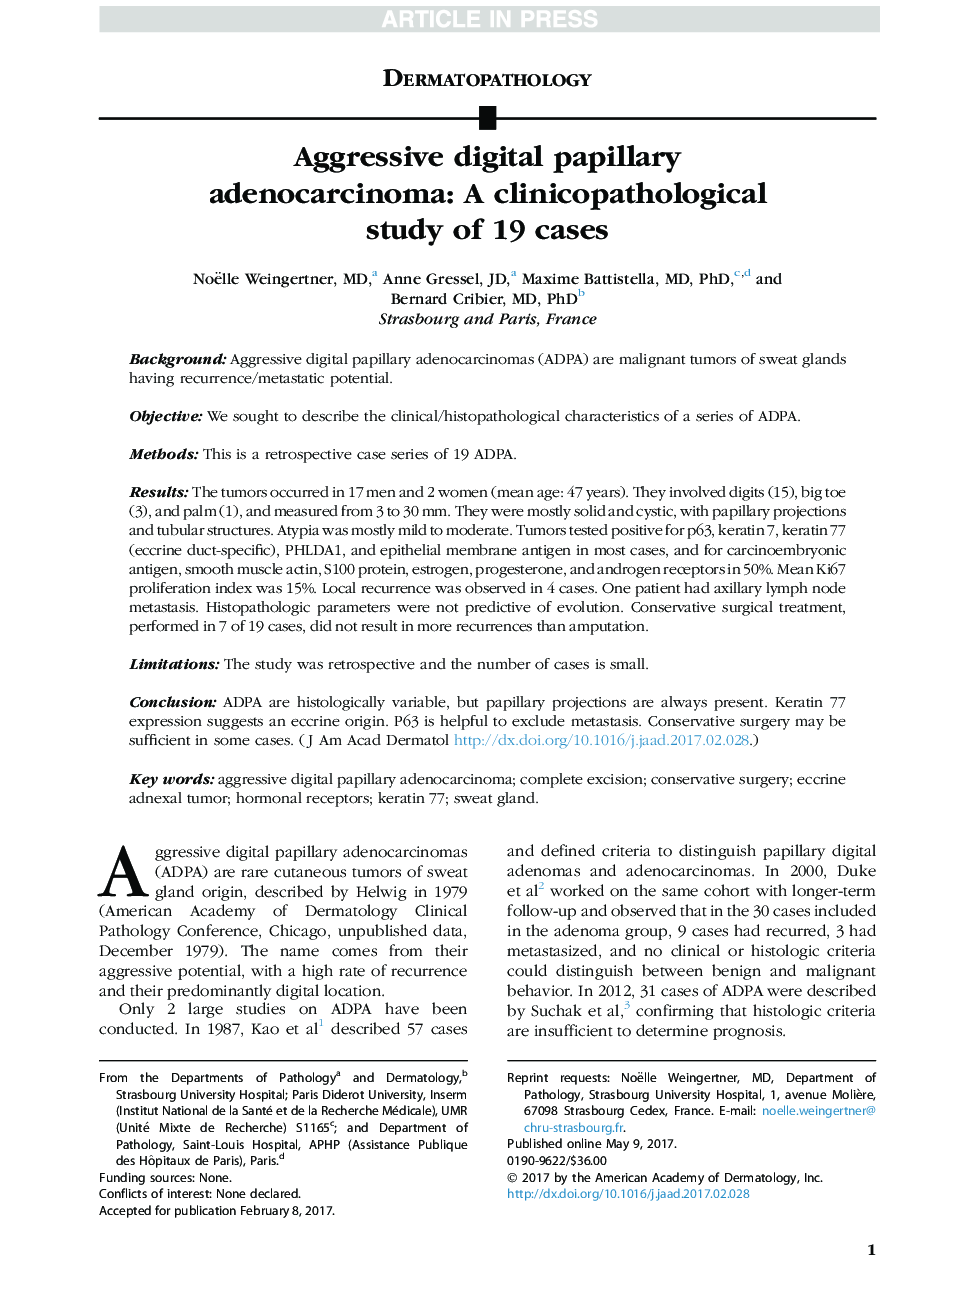 آدنوکارسینومای پاپیلری دیجیتال تهاجمی: یک مطالعه کلینیکوپاتولوژیک 19 مورد است 